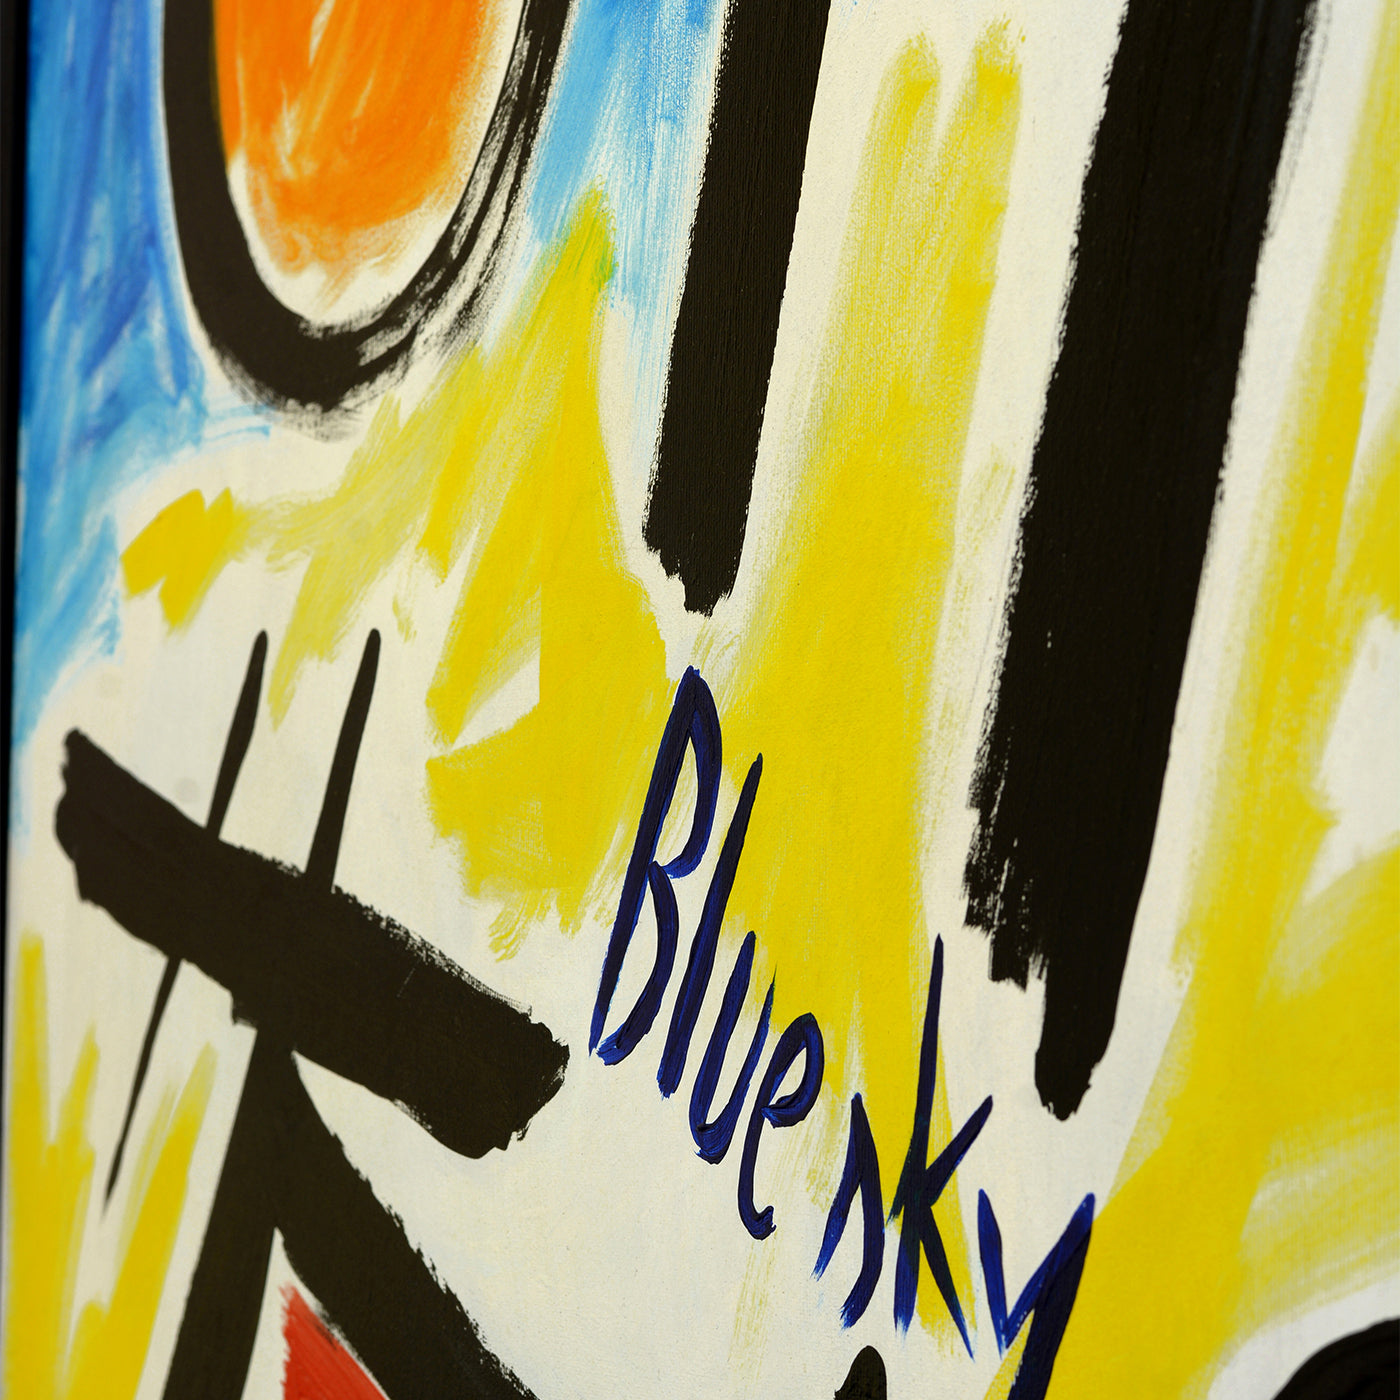 Bluesky acryl auf leinwand gemälde von Antonio Minopoli - Alternative Ansicht 1